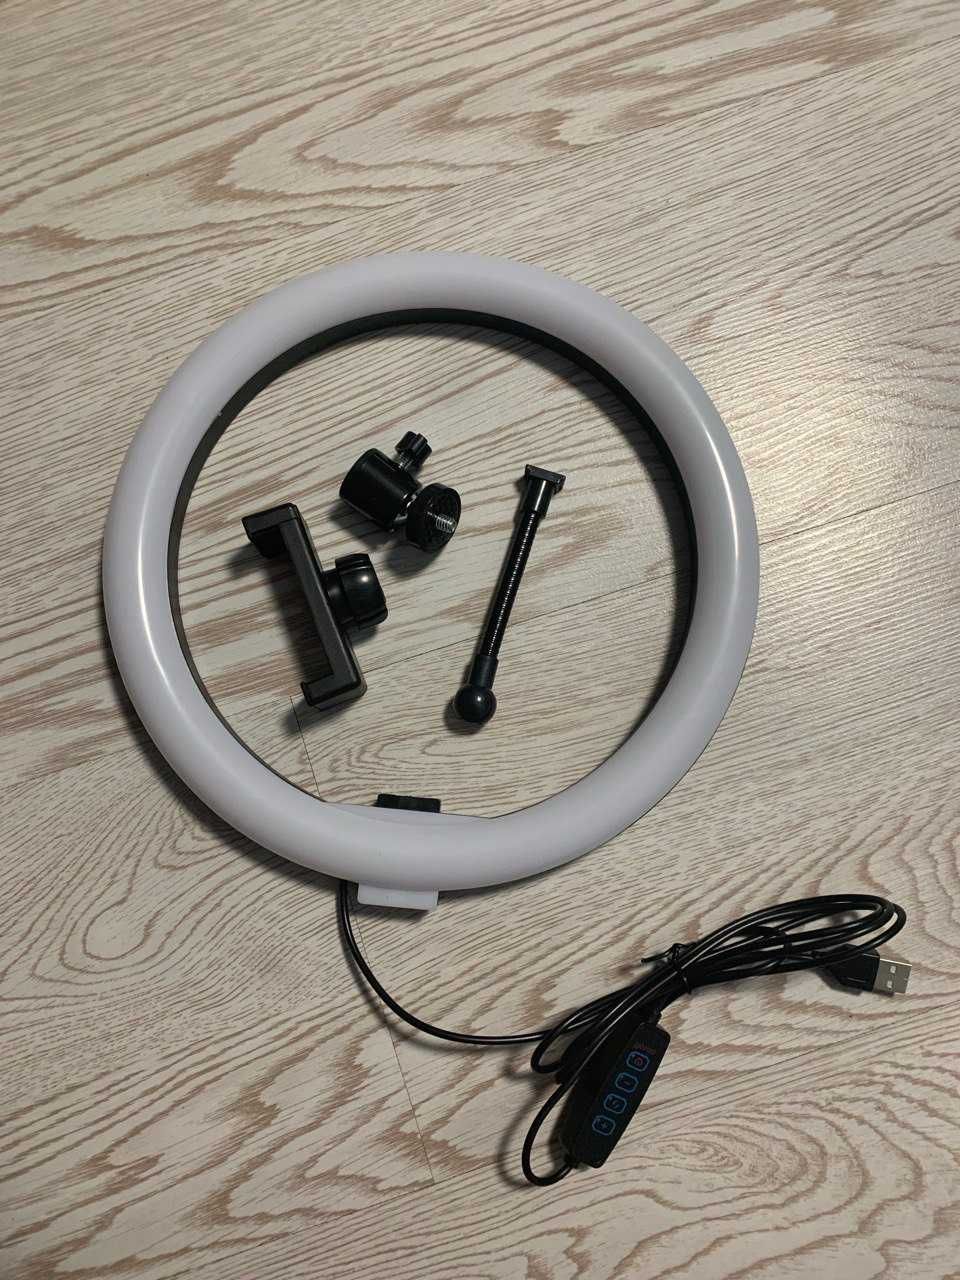 Кольцевая Led лампа D 26 см Ring Fill Light